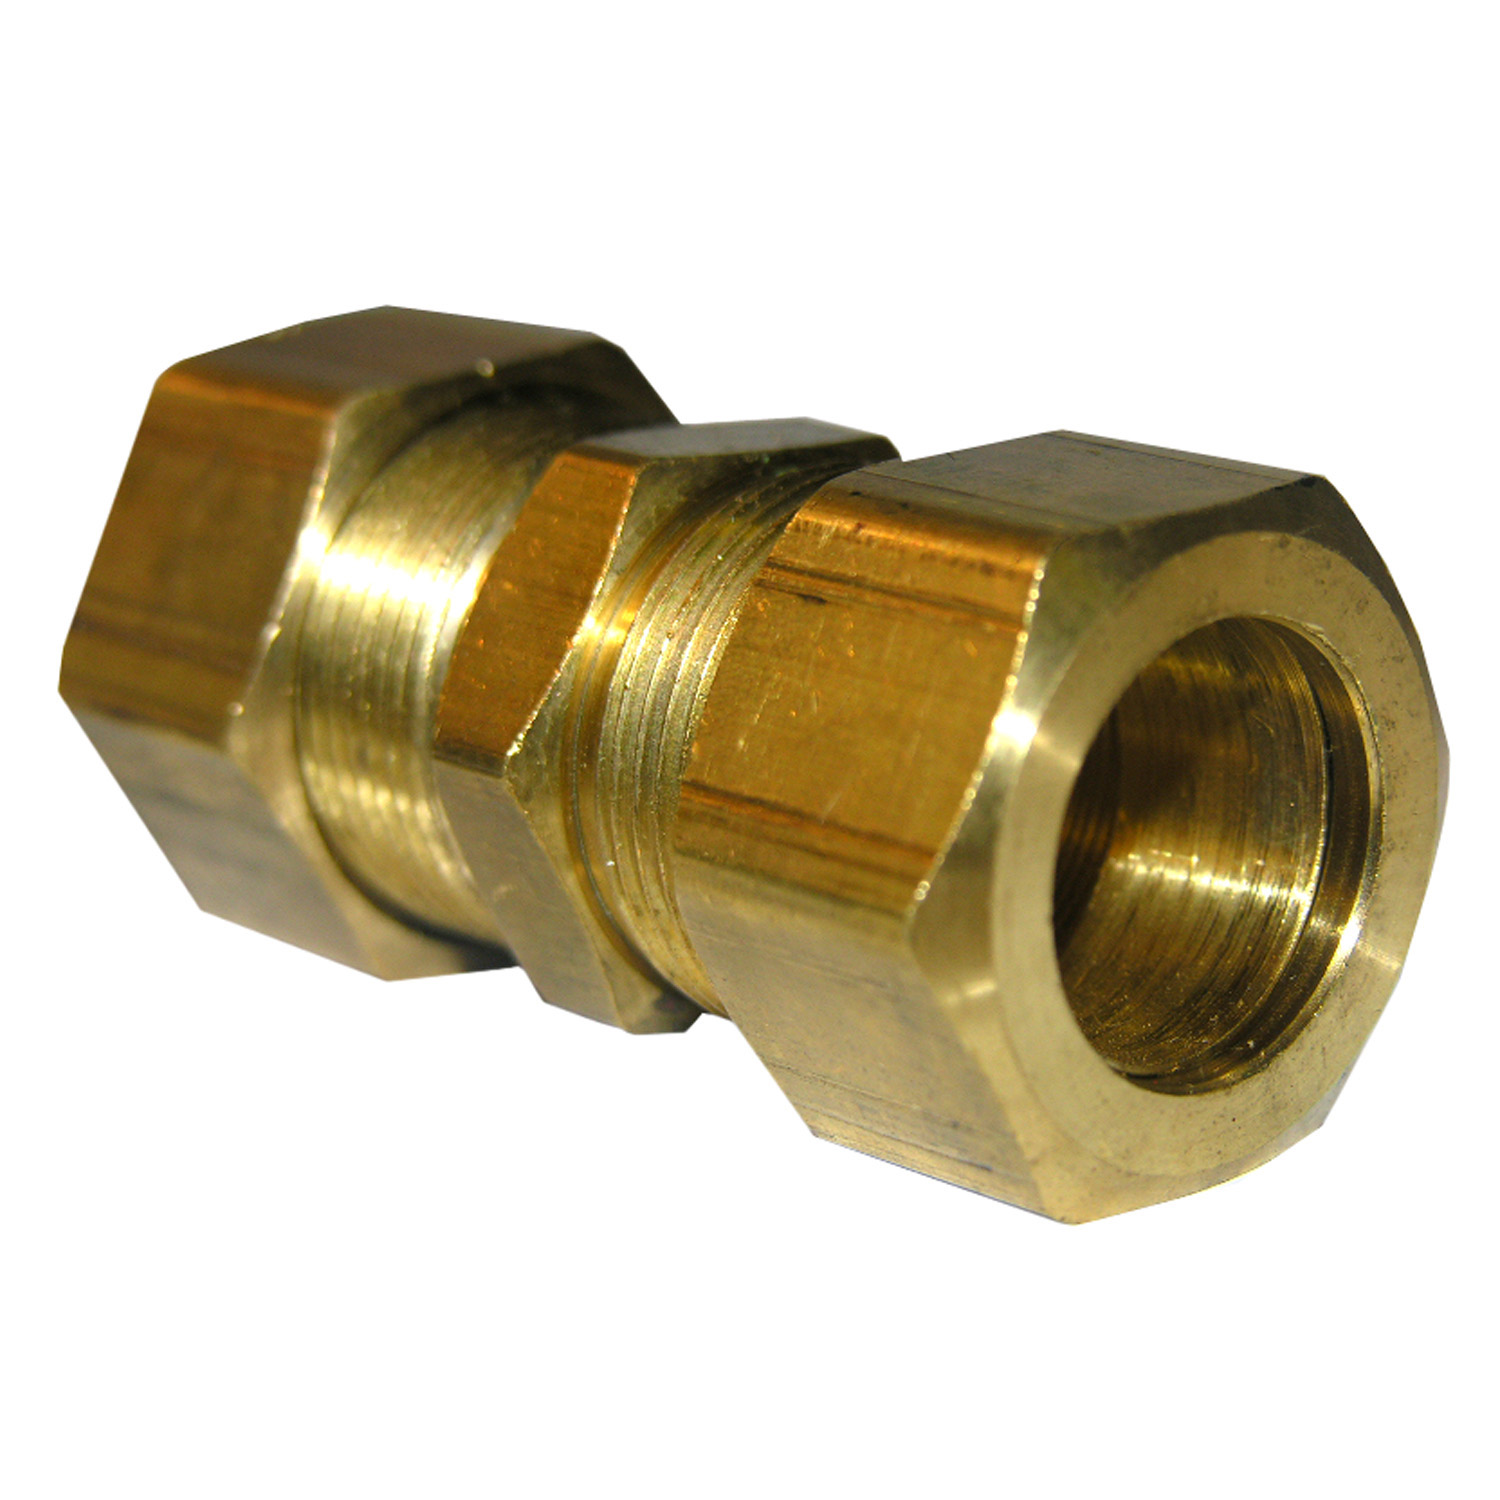 17-6231 Pipe Union, 3/8 in, Compression, Brass, 150 psi Pressure